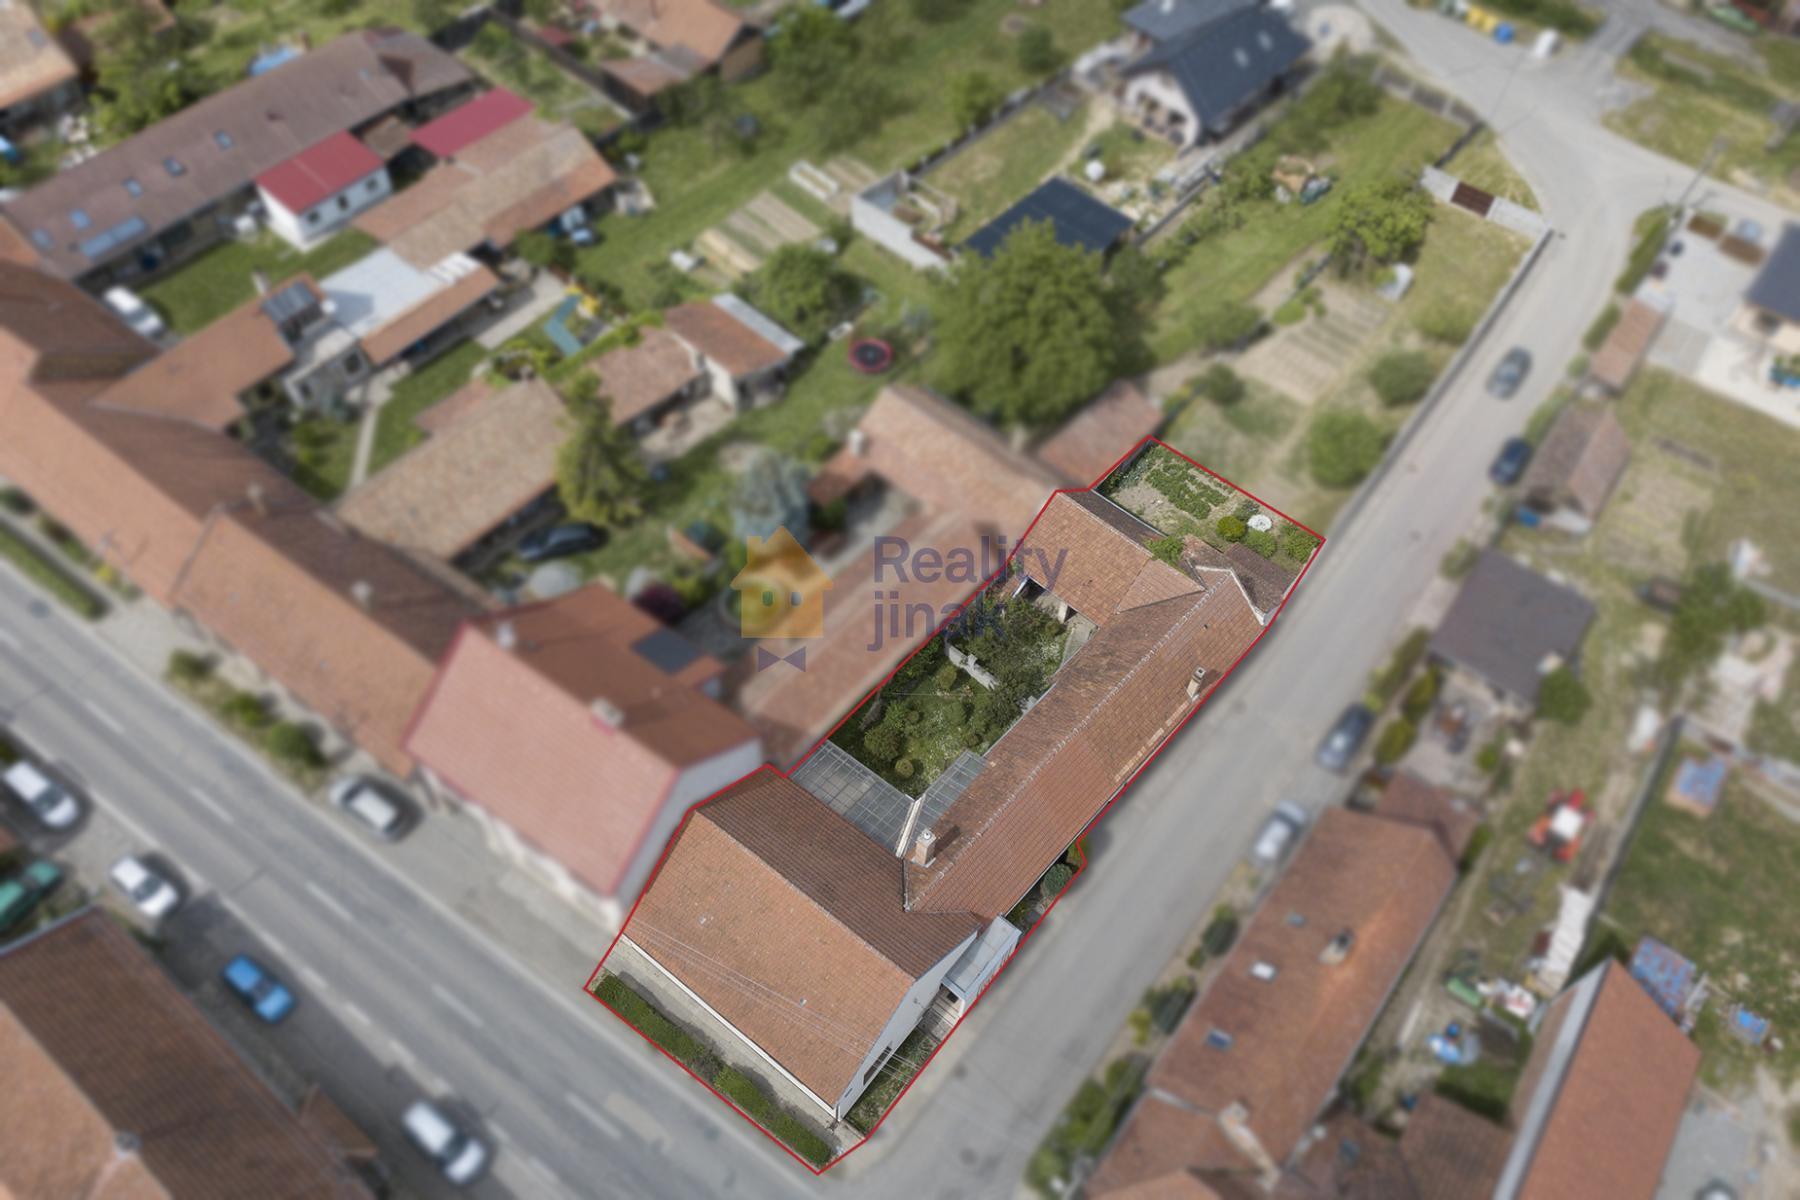 Prodej RD na ul. Ždánská v Kloboučkách - Bučovice, 4+1, zahrada, sklep, terasa, technické místnosti, obrázek č. 3